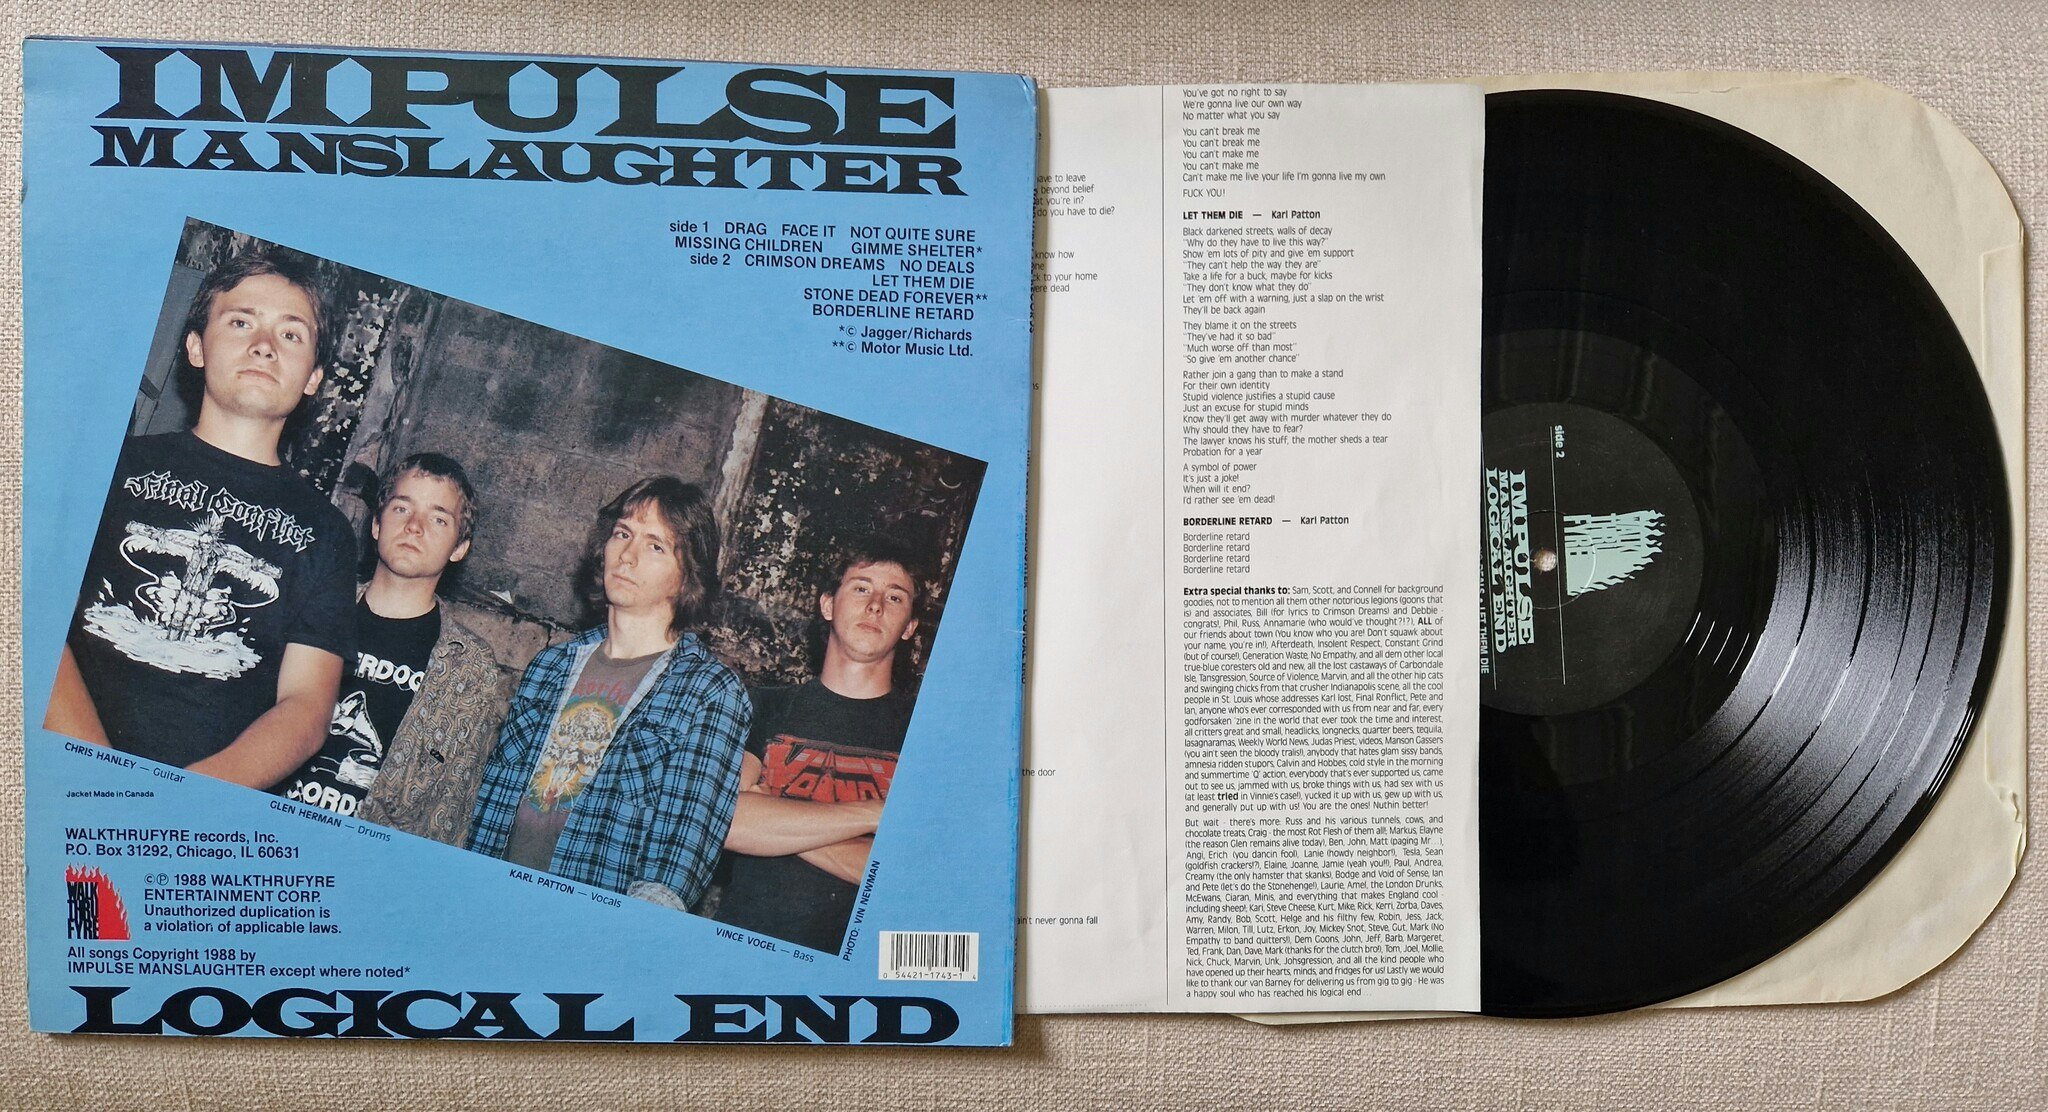 Impulse Manslaughter, Logical end. Vinyl LP